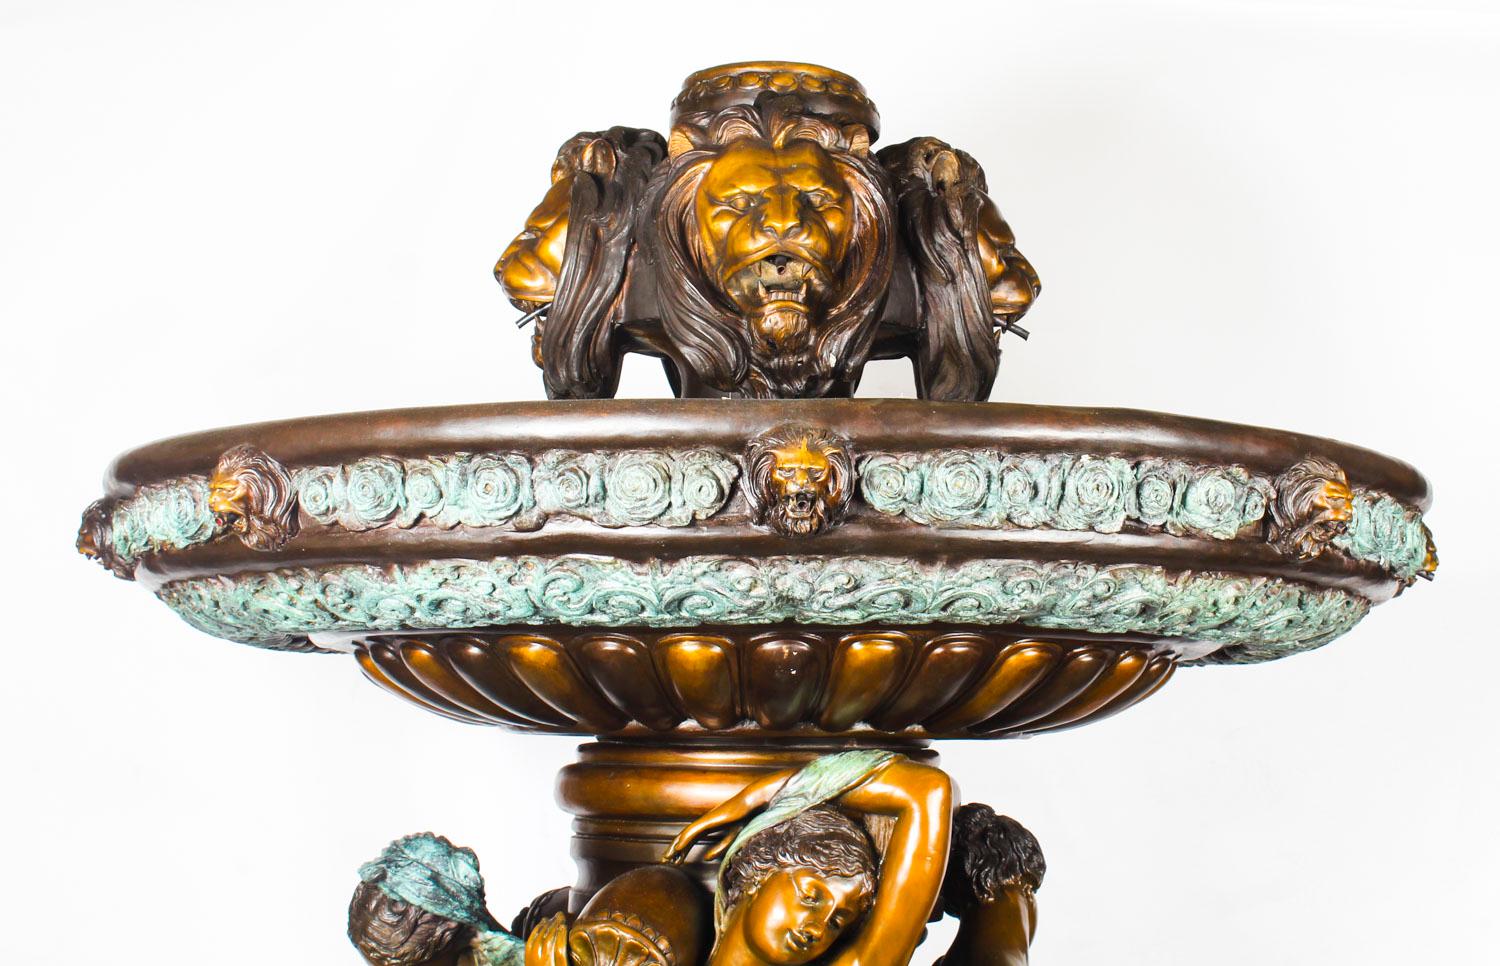 Es handelt sich um einen monumentalen französischen Brunnen aus Bronze im neoklassizistischen Stil aus dem späten zwanzigsten Jahrhundert mit zwei Etagen.
 
Dieser gewaltige Brunnen versprüht Wasser aus der Spitze, aus den Vasen, die von den